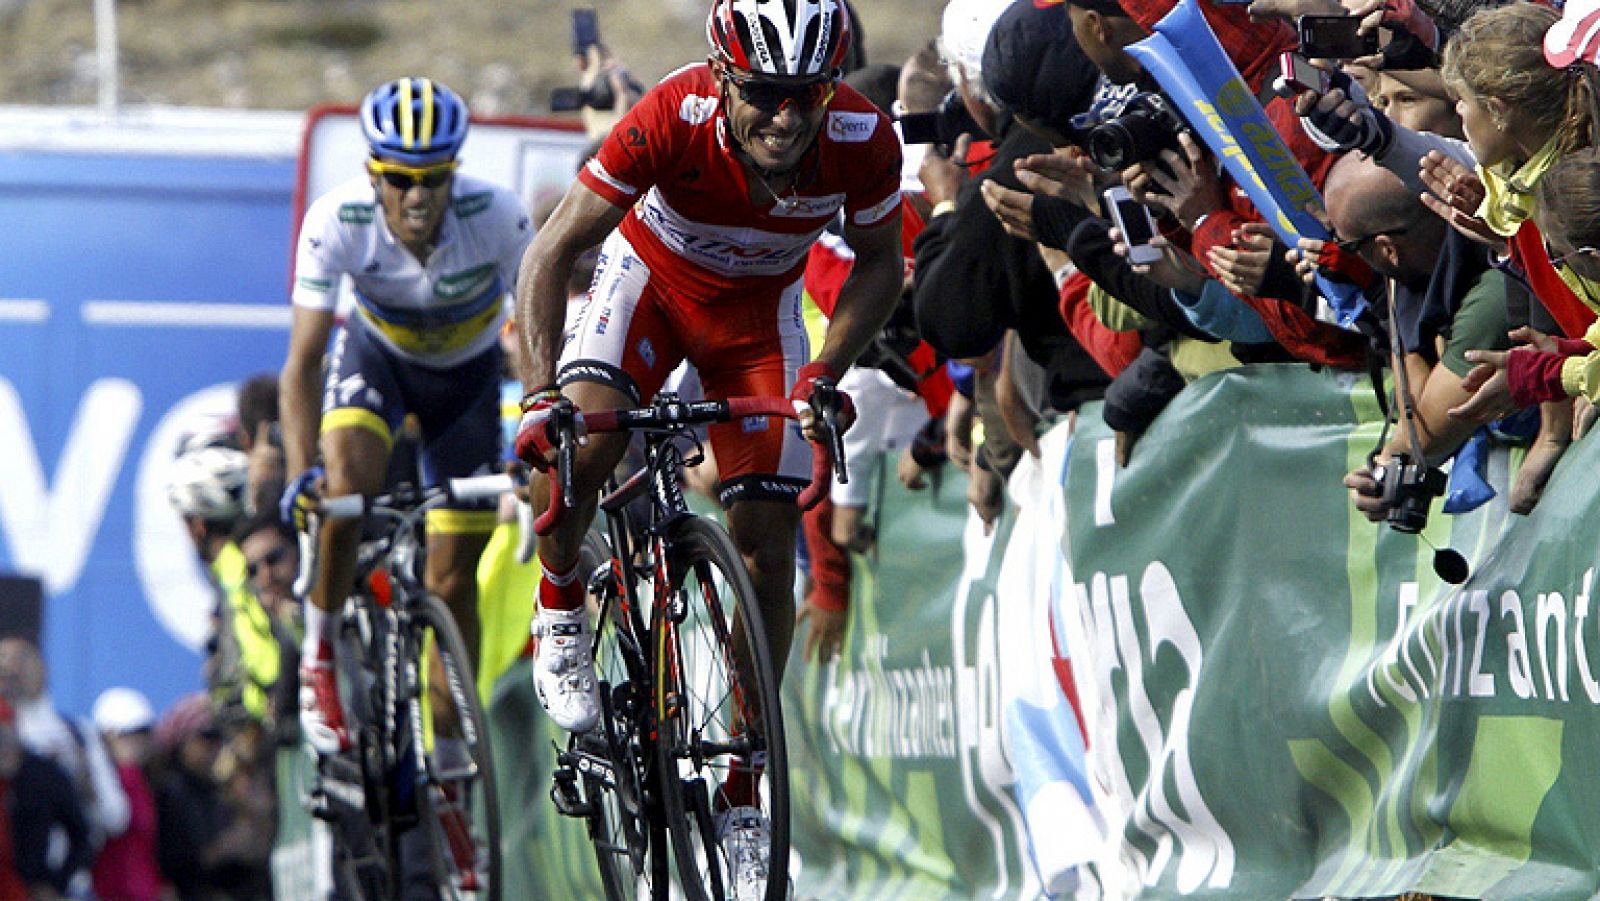 El italiano Dario Cataldo (Omega) ha sido el ganador de la decimosexta etapa de la Vuelta disputada entre Gijón y el Cuitu Negru, en la cima de la estación de Valgrande Pajares, de 183 kilómetros, en la que Joaquim Purito Rodriguez conservó el maillo